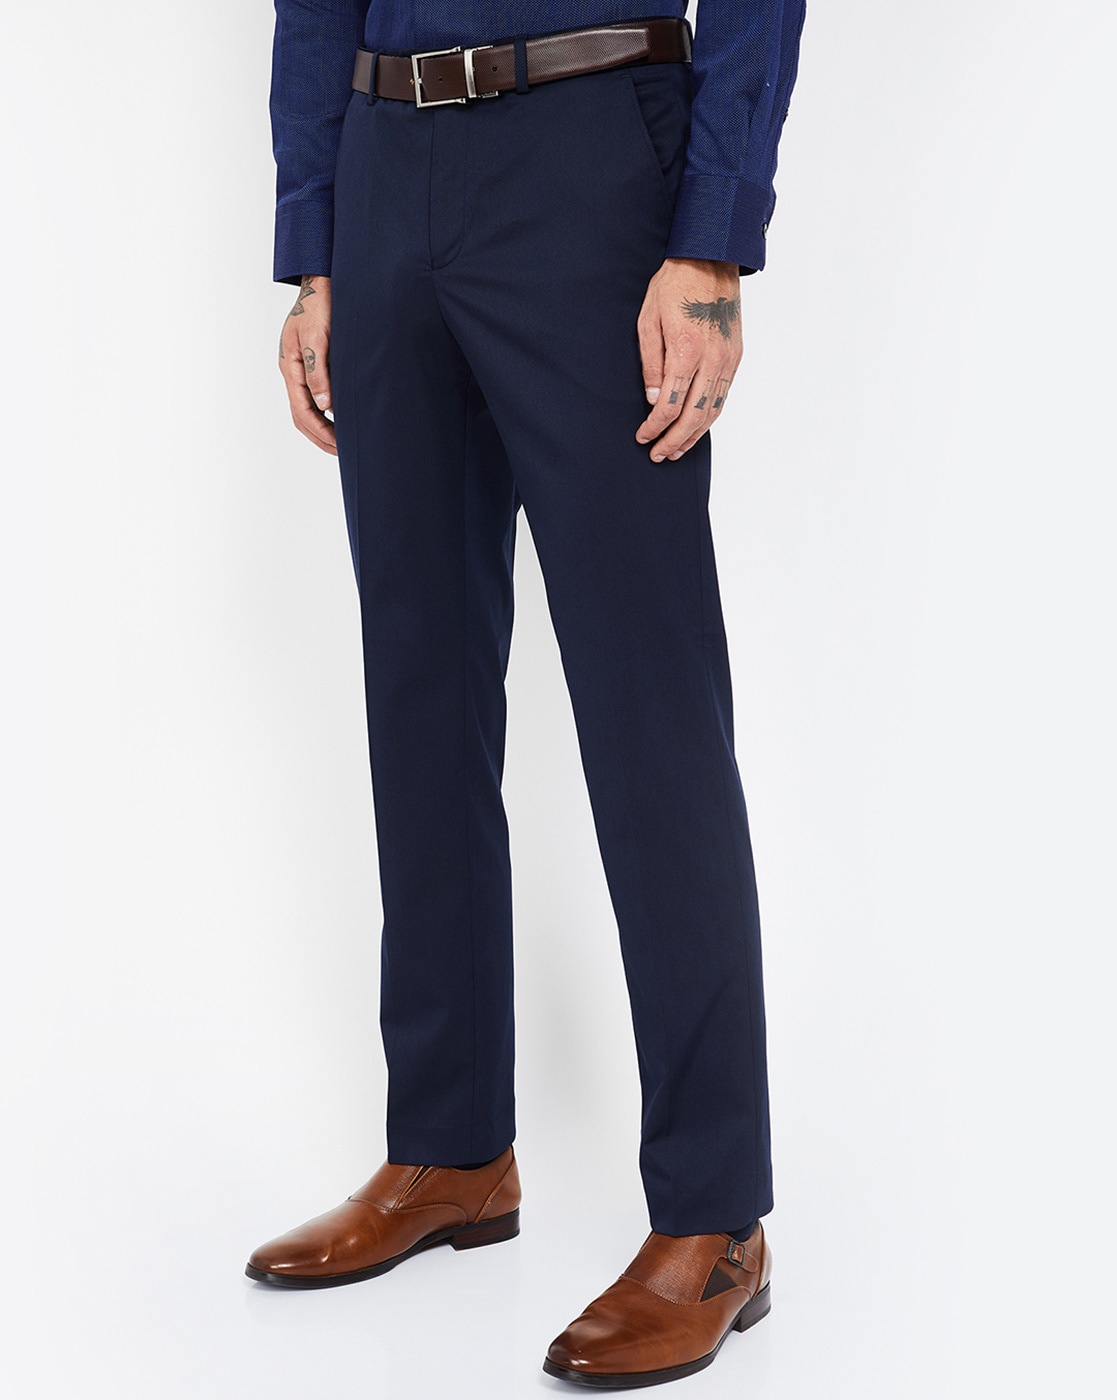 The Perfect Suit  Trousers  Blue suit men Men suits blue Mens outfits